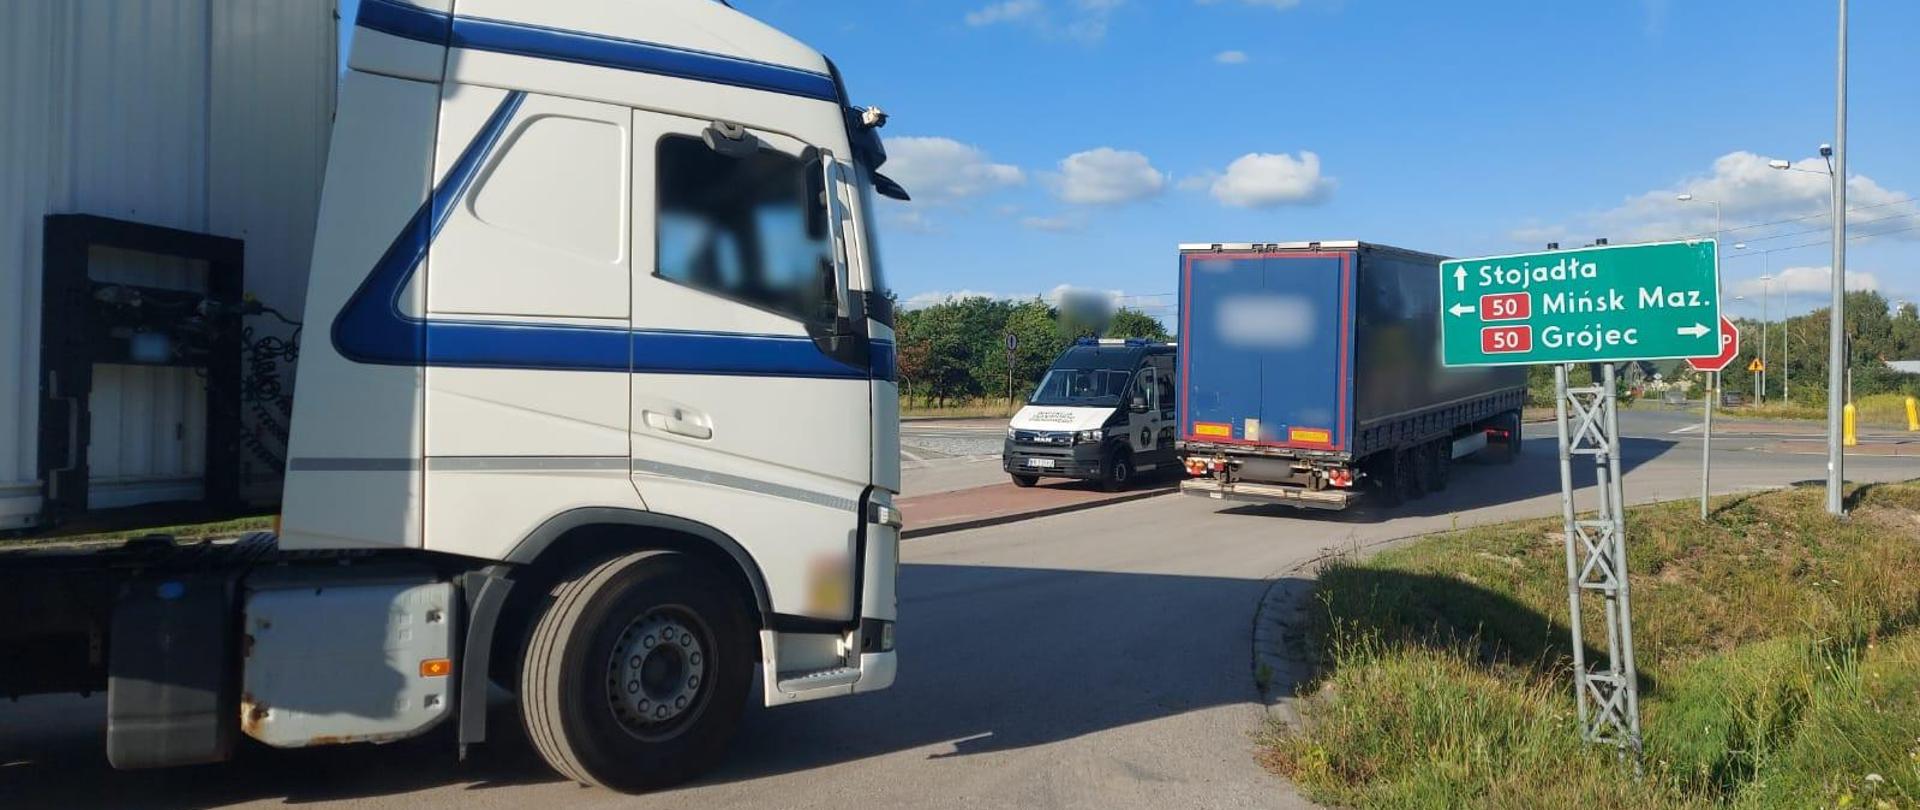 Ukraińskie ciężarówki, zatrzymane do kontroli przez patrol siedleckiej Inspekcji Transportu Drogowego na krajowej „pięćdziesiątce”, w pobliżu Mińska Mazowieckiego.